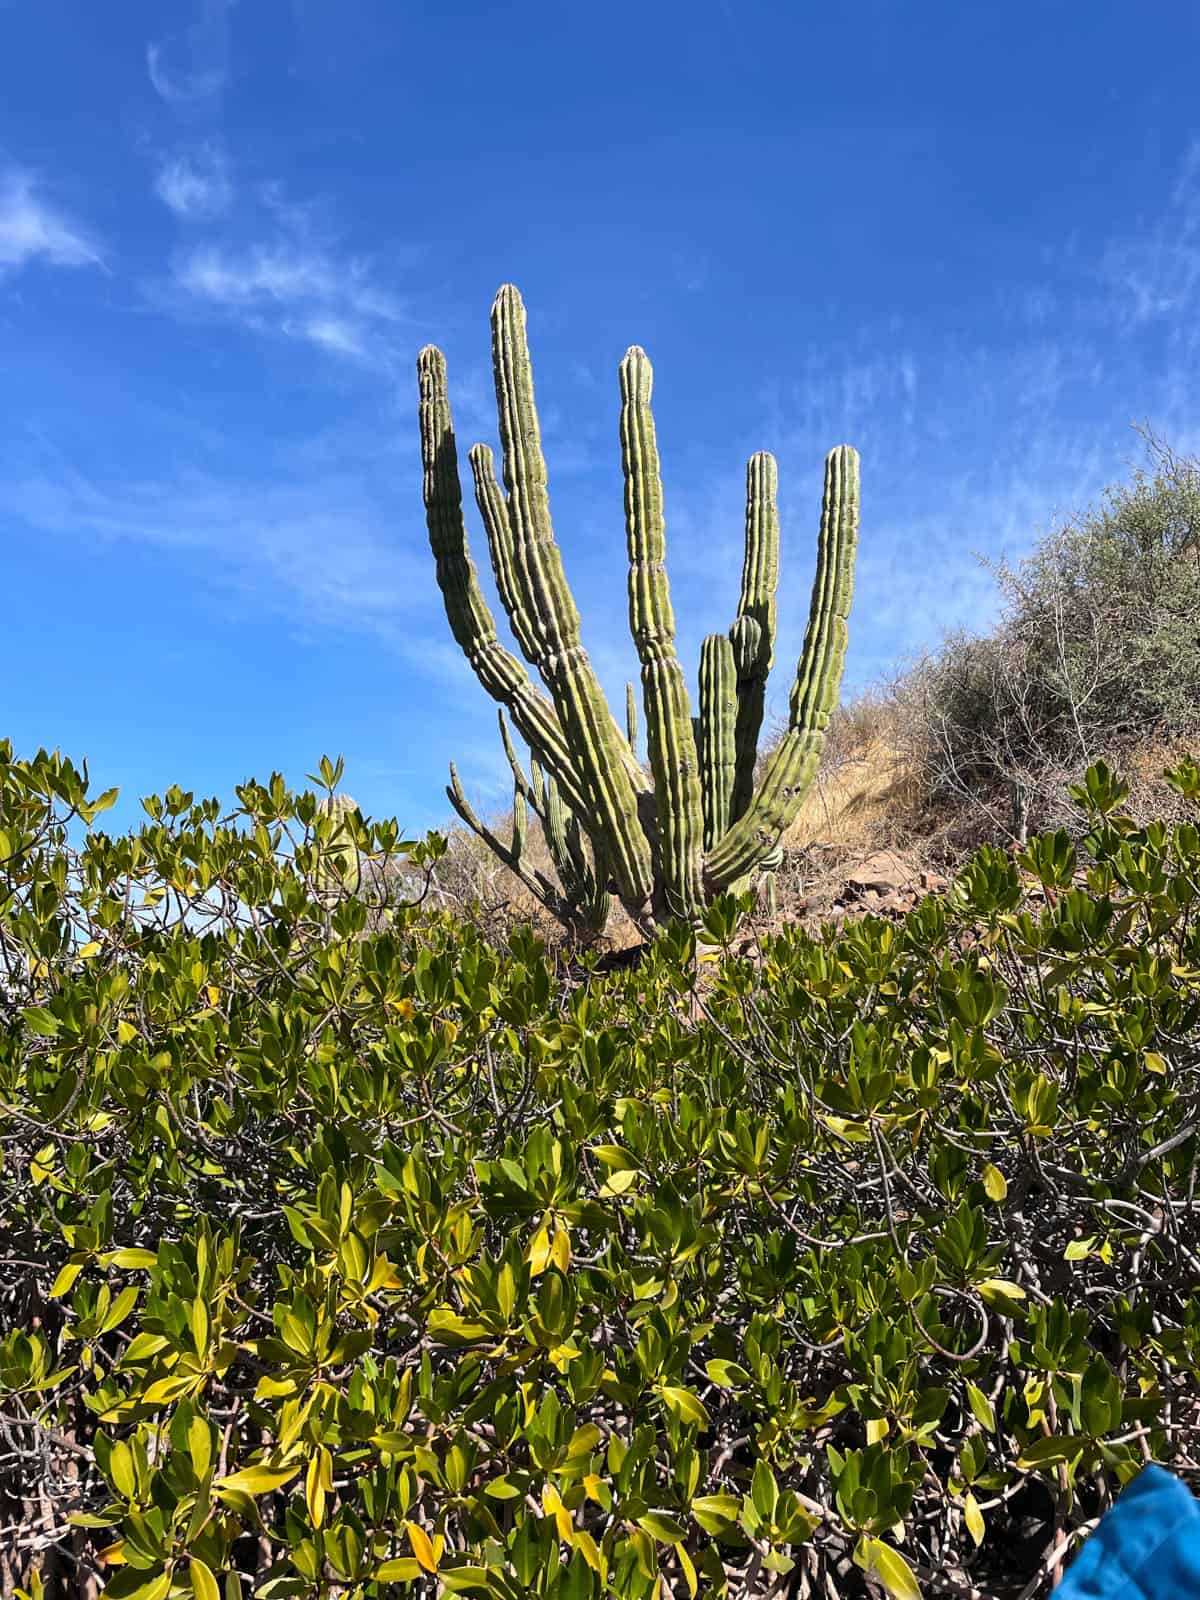 Cactus against blue sky in Baja Mexico.